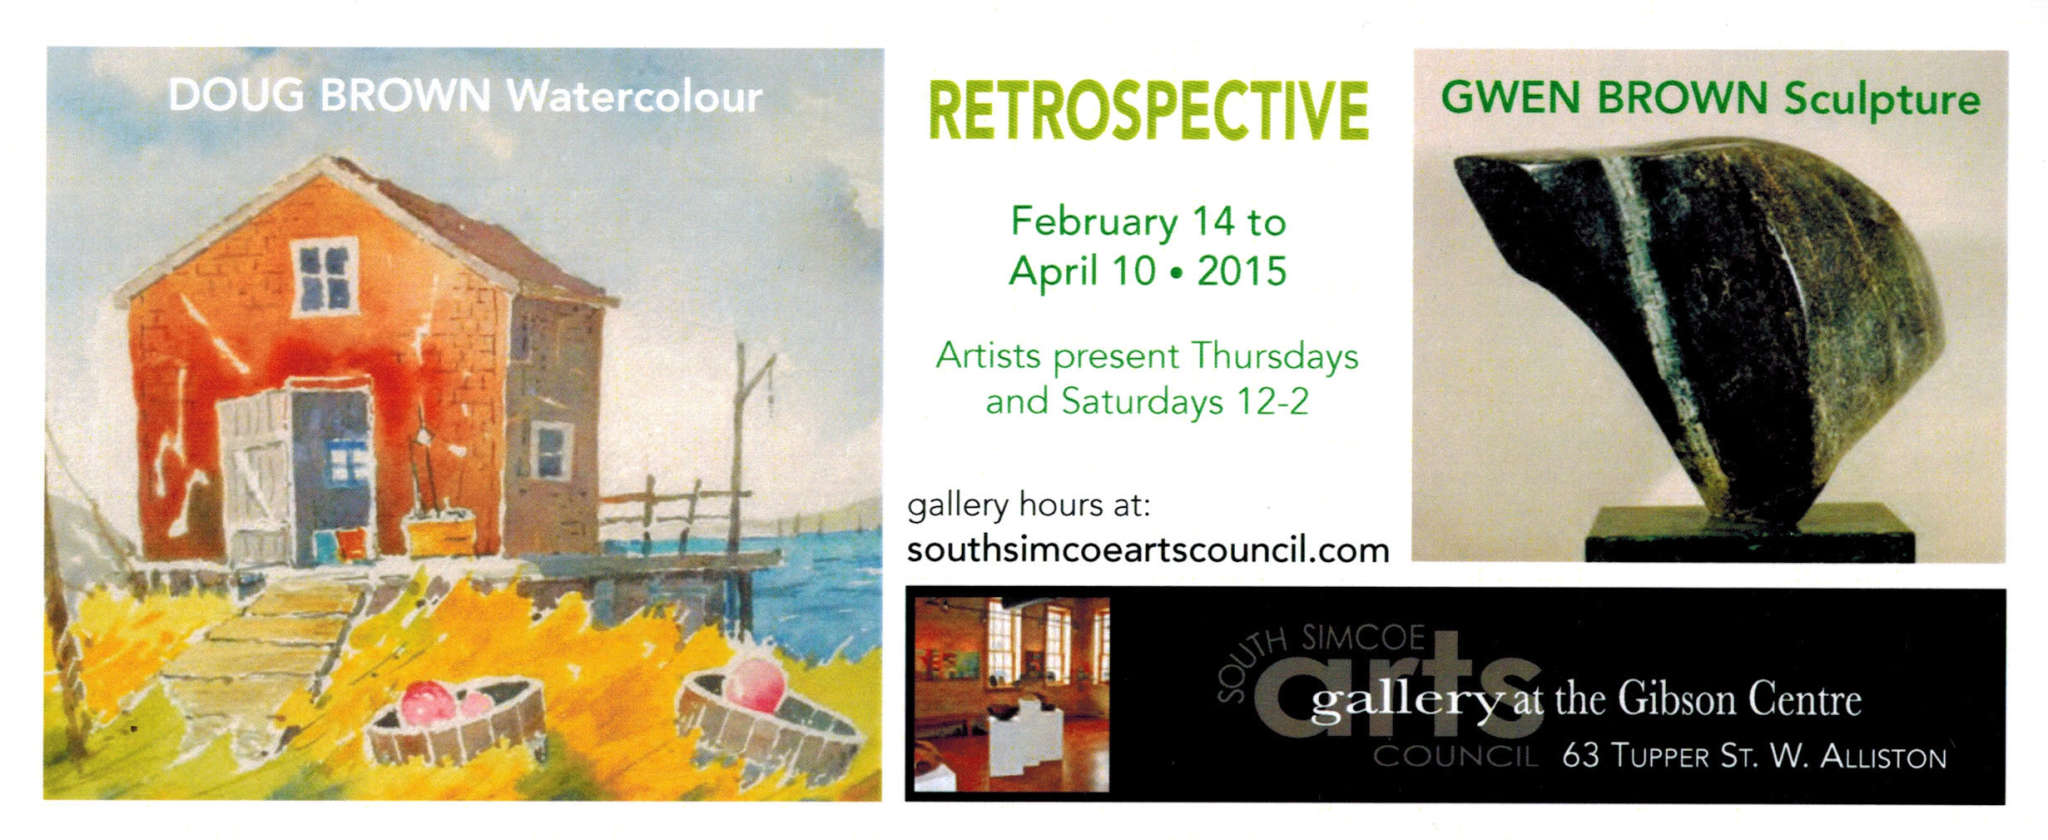 Retrospective - Feb 14th to Apr 10th, 2015